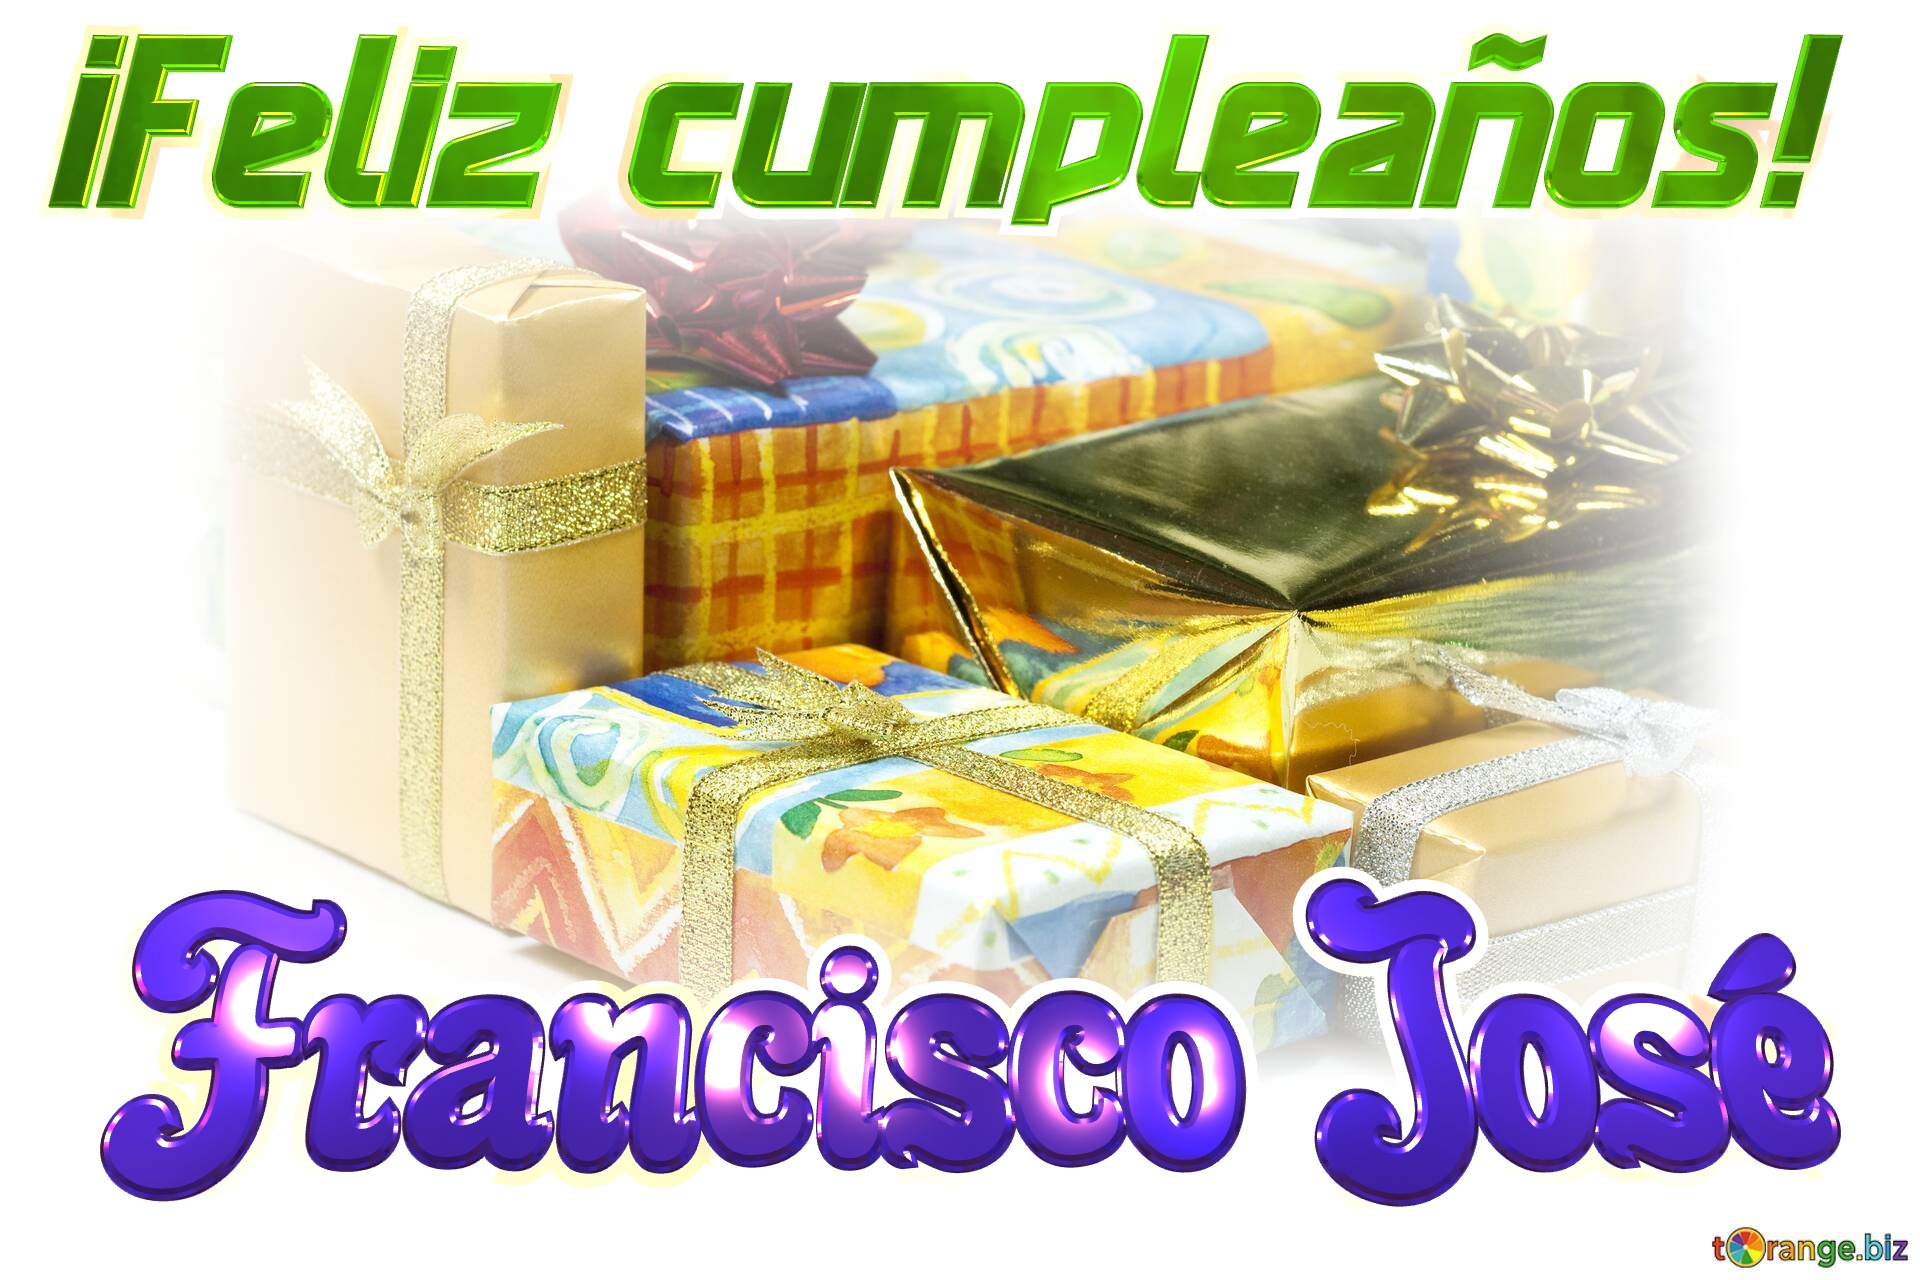 ¡Feliz cumpleaños! Francisco José  cajas de regalo №0